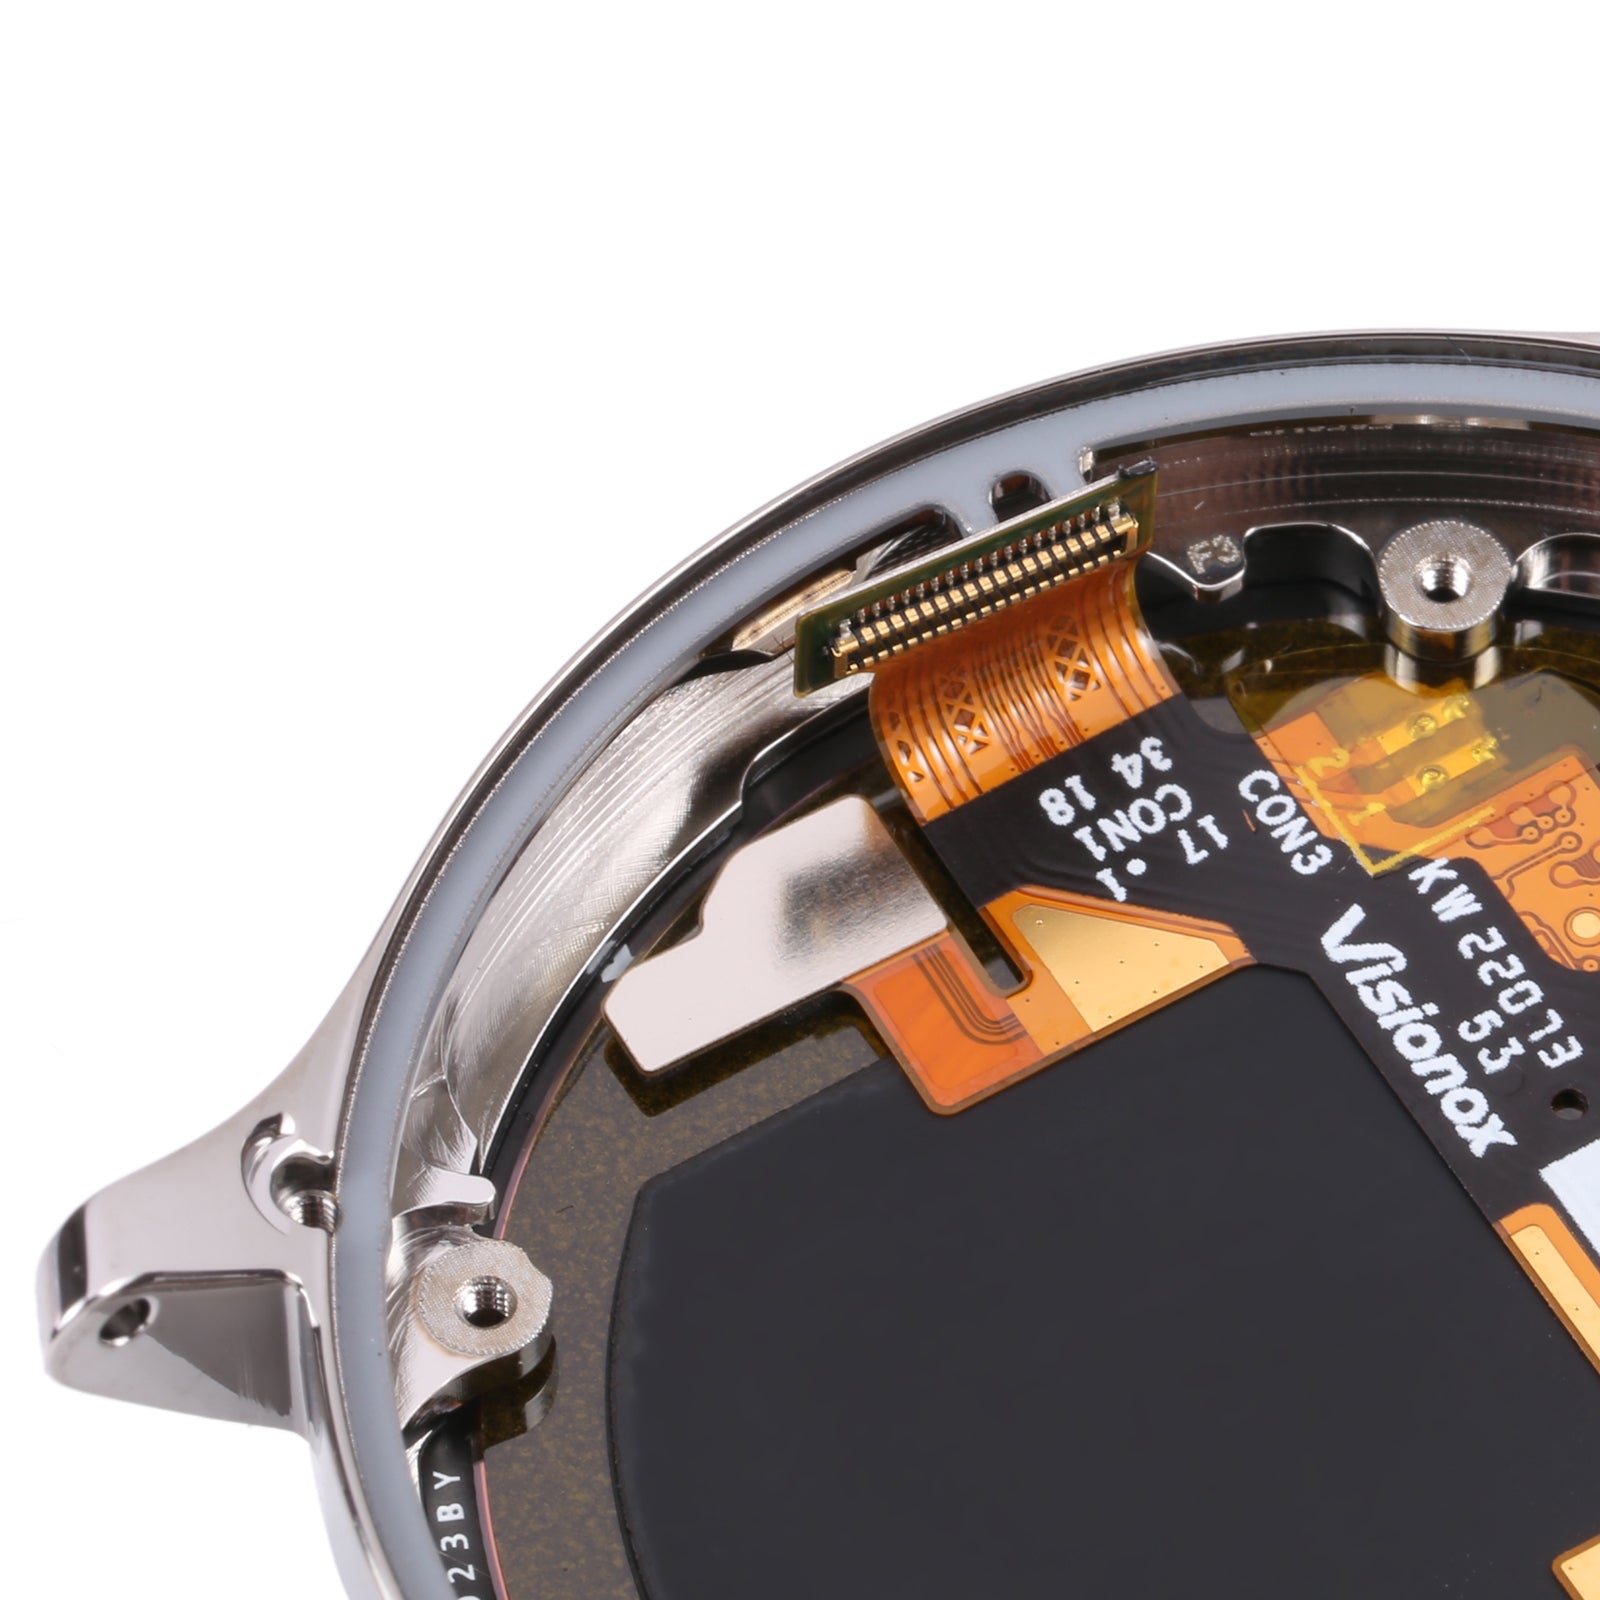 Plein Ecran + Tactile + Châssis Xiaomi Watch S1 Pro Argent